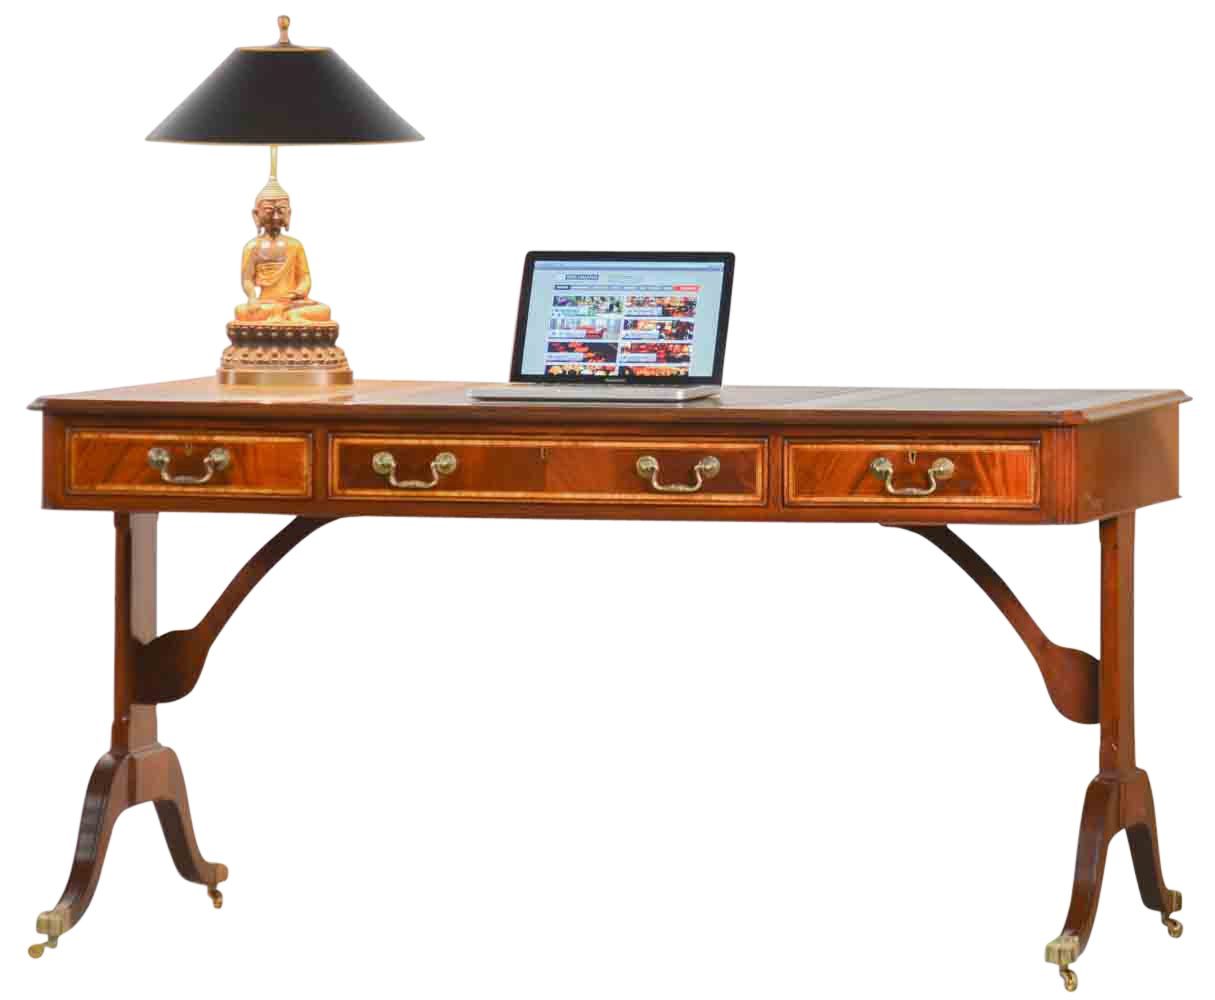 Kai Wiechmann Schreibtisch Bureau Plat Mahagoni 156 cm, hochwertiger Bürotisch, Writing Table mit Lederschreibeinlage, beidseitig verwendbar